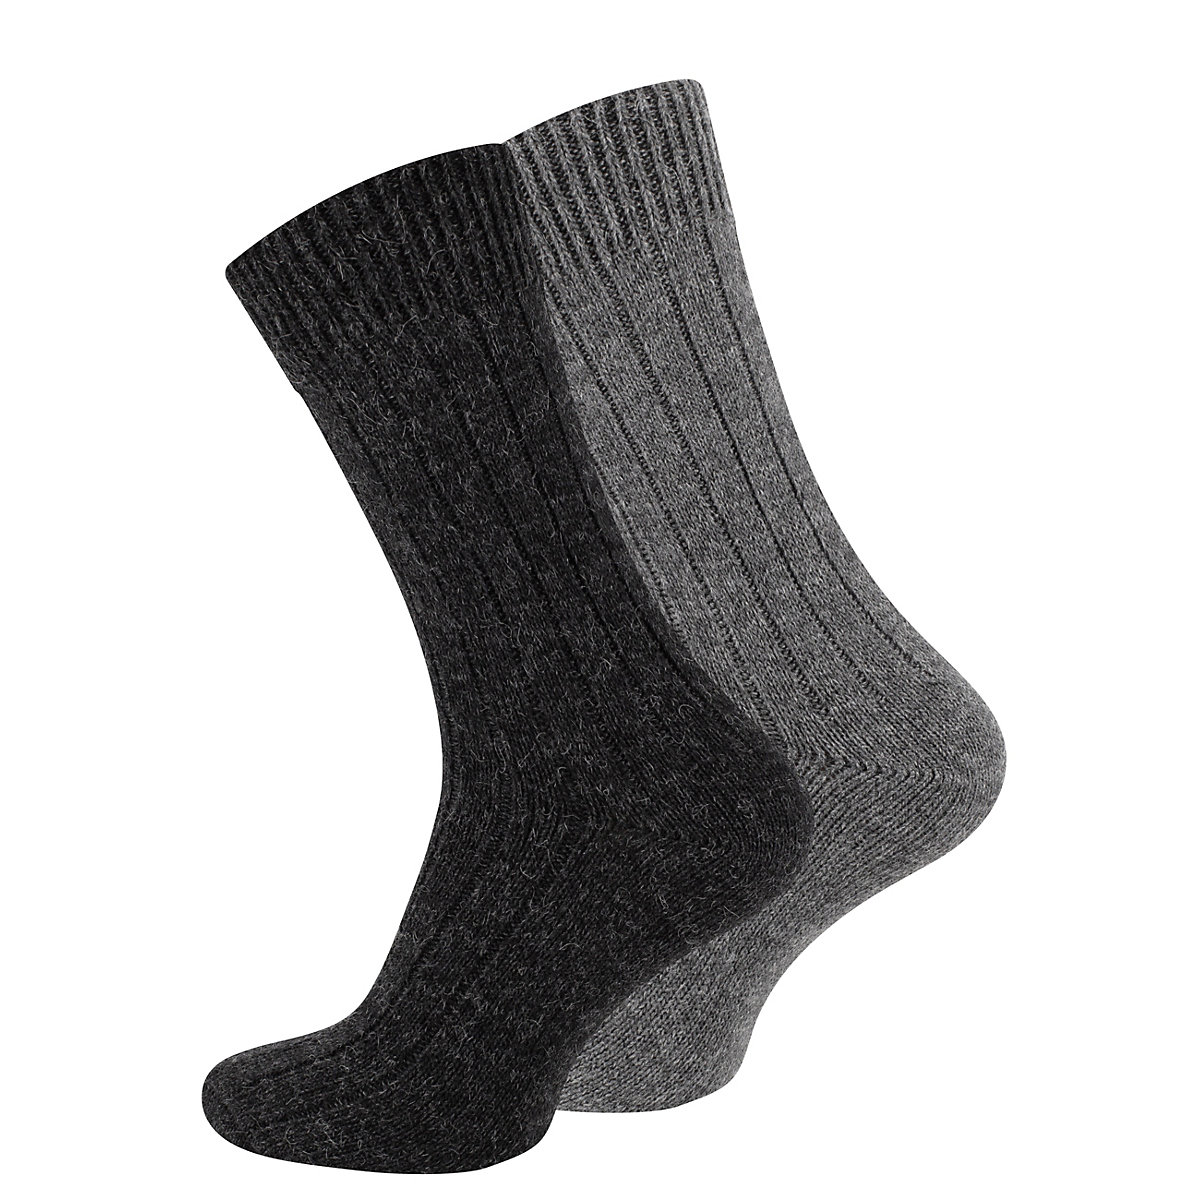 Cotton Prime 2 Paar Wollsocken Alpaka Socken Socken anthrazit